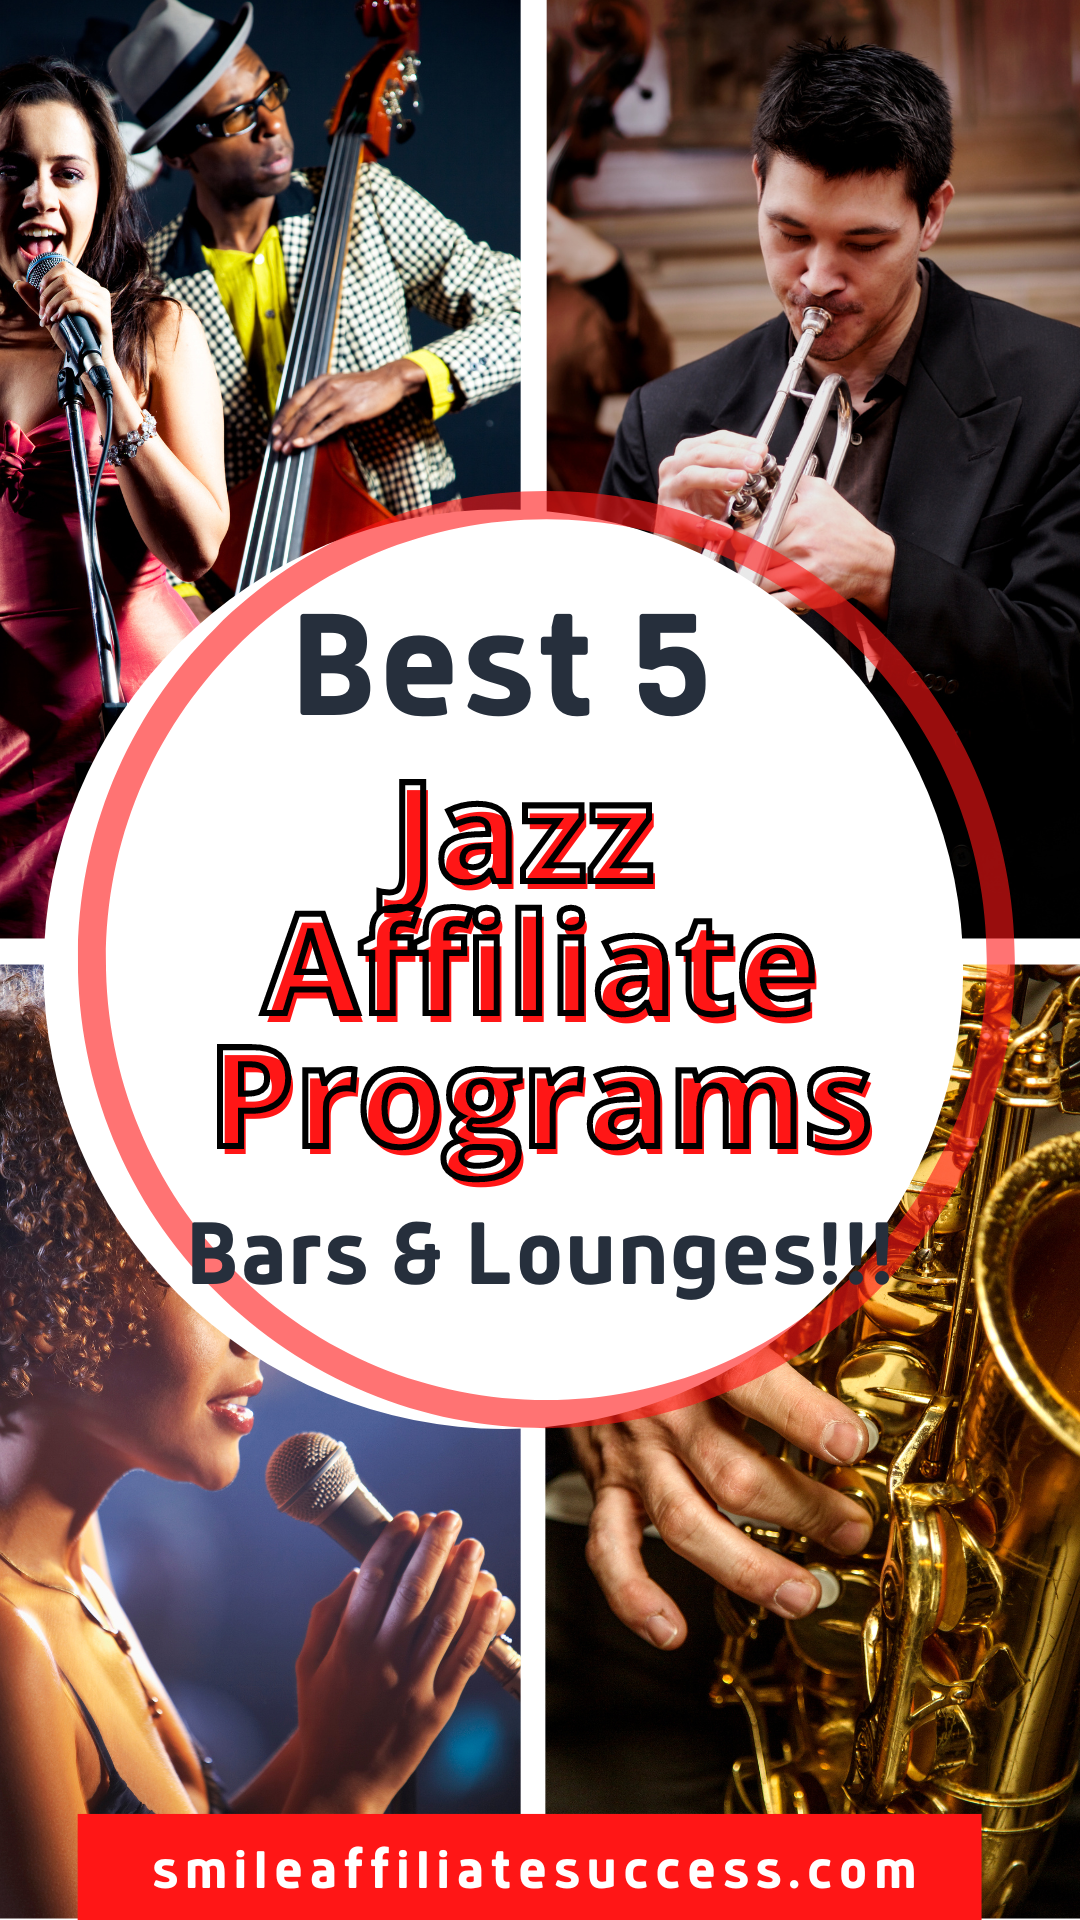 Best 5 Jazz Affiliate Programs